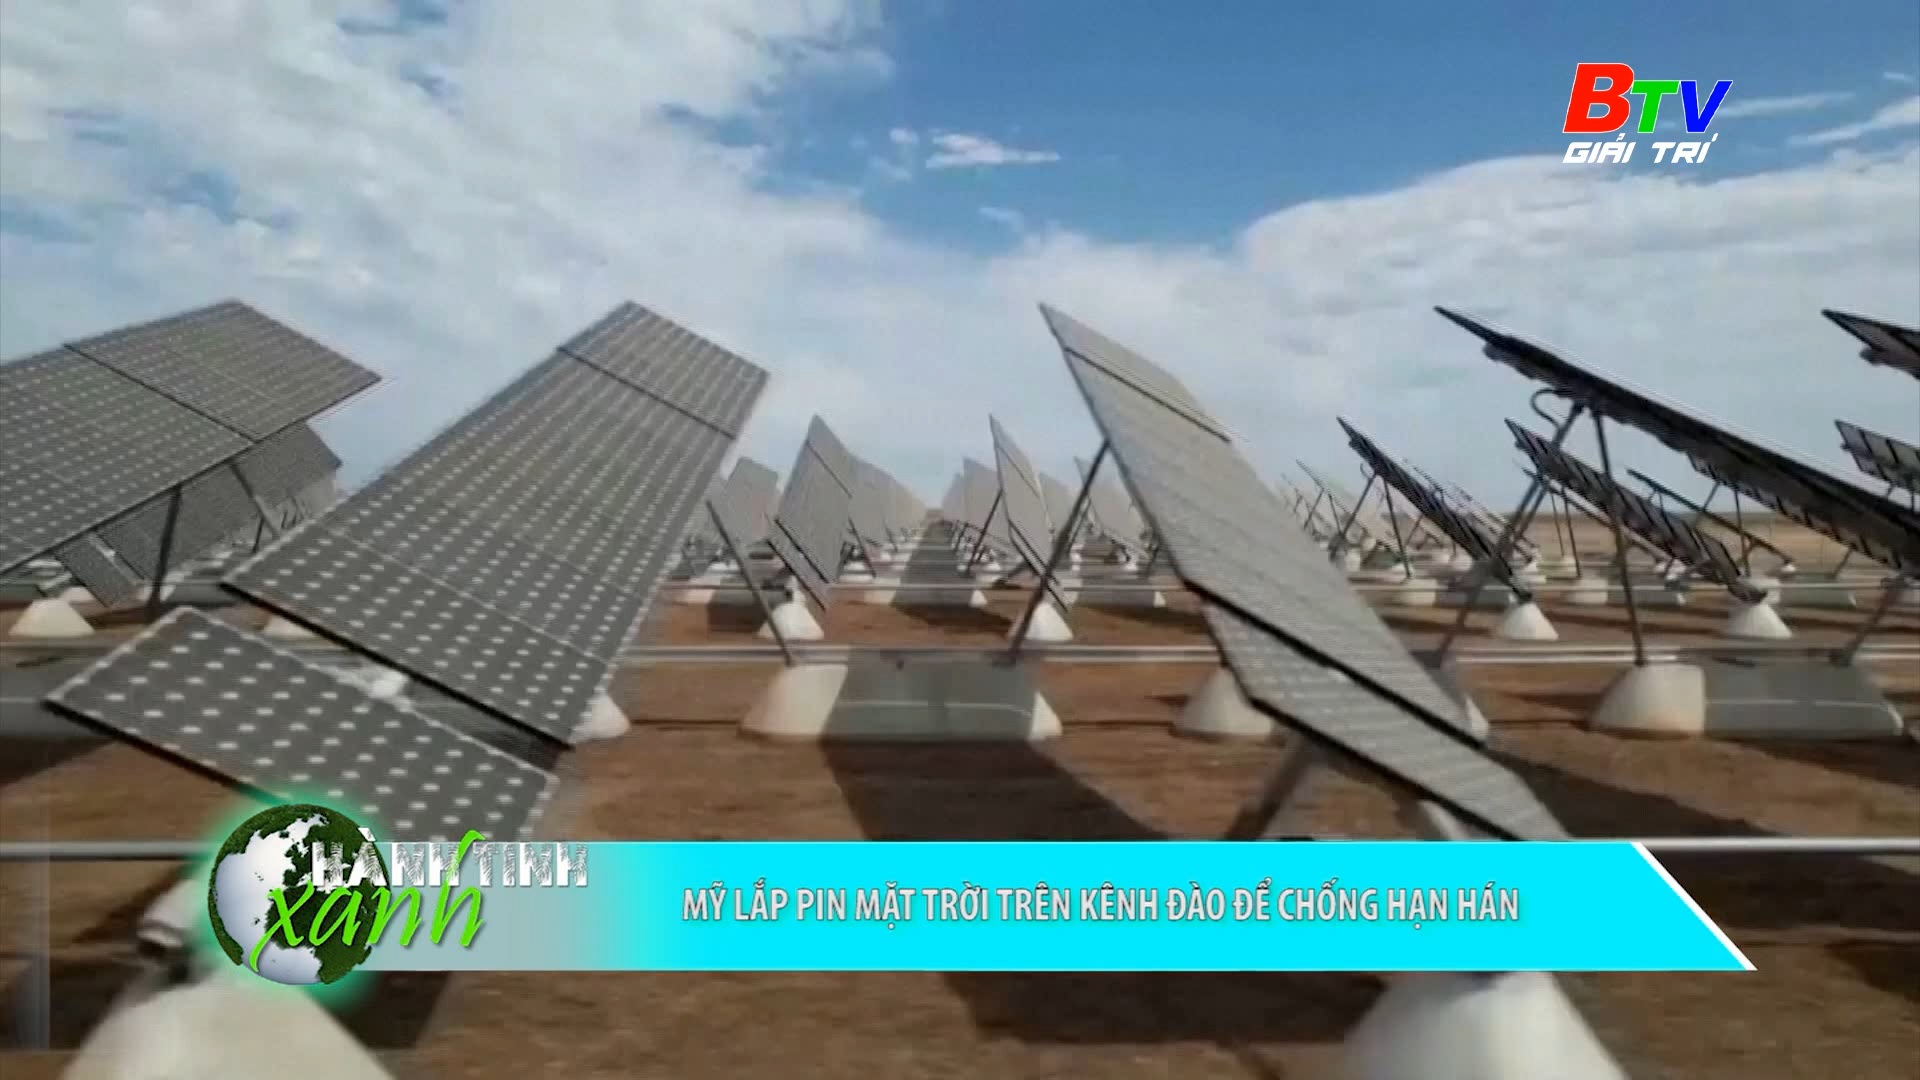 Mỹ lắp pin mặt trời trên kênh đào để chống hạn hán